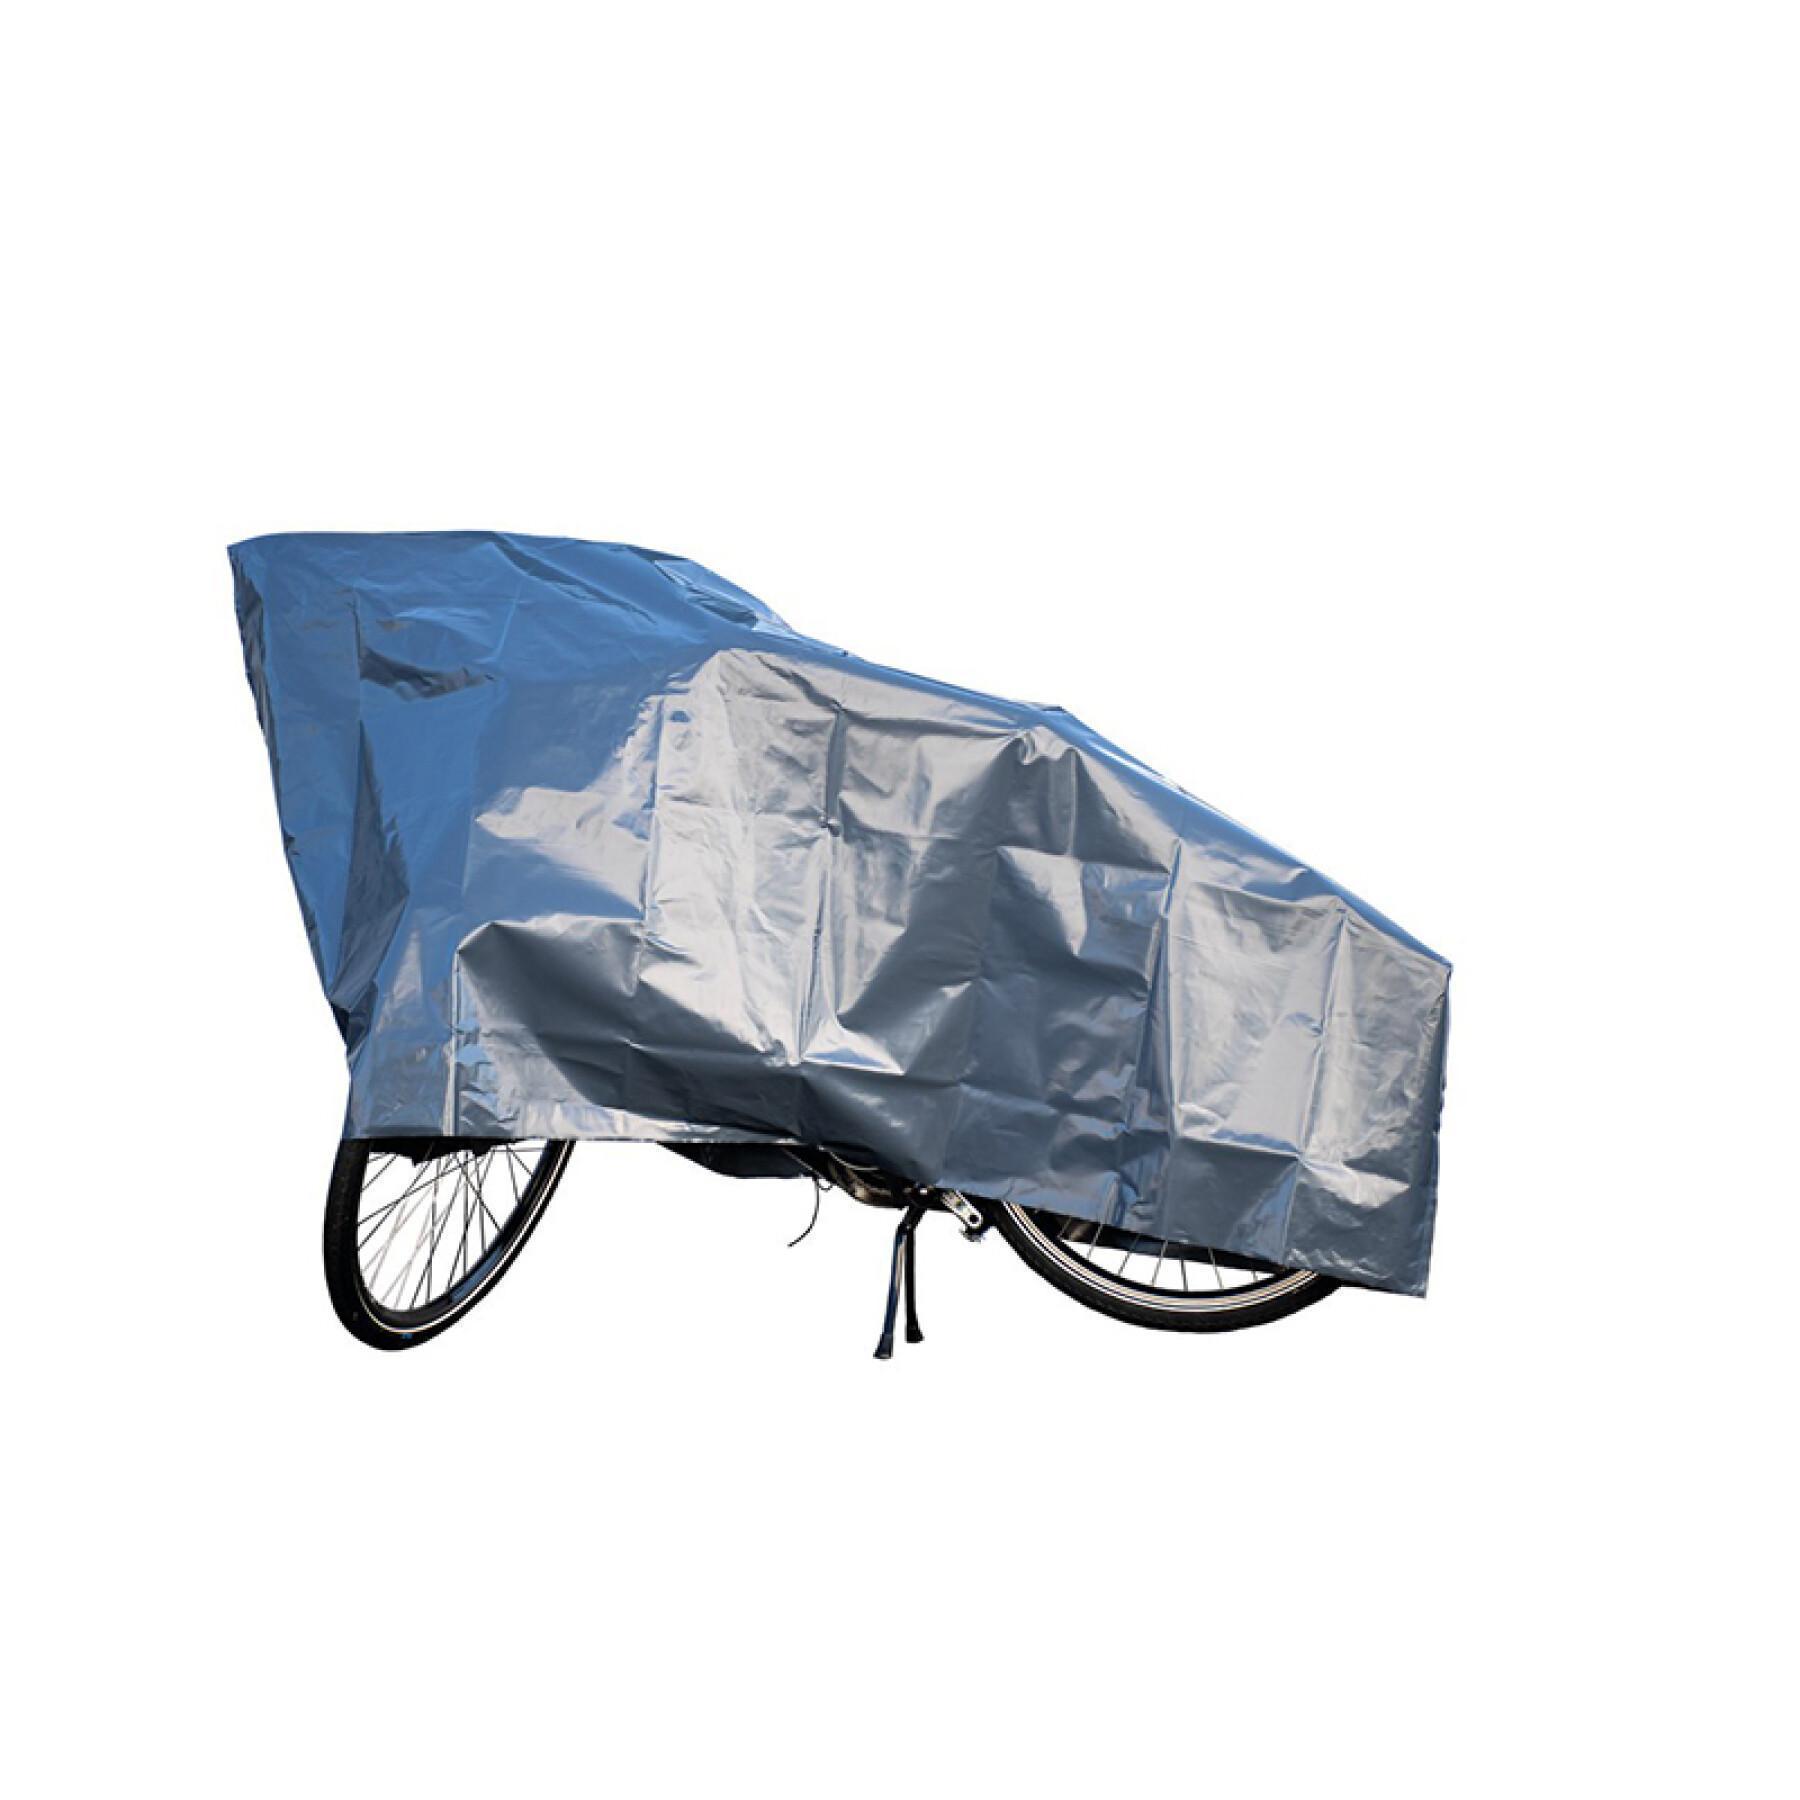 Telo copri bici pieghevole XLC Vg-g01 - Coperture e borse per biciclette -  Trasporto - Abbigliamento